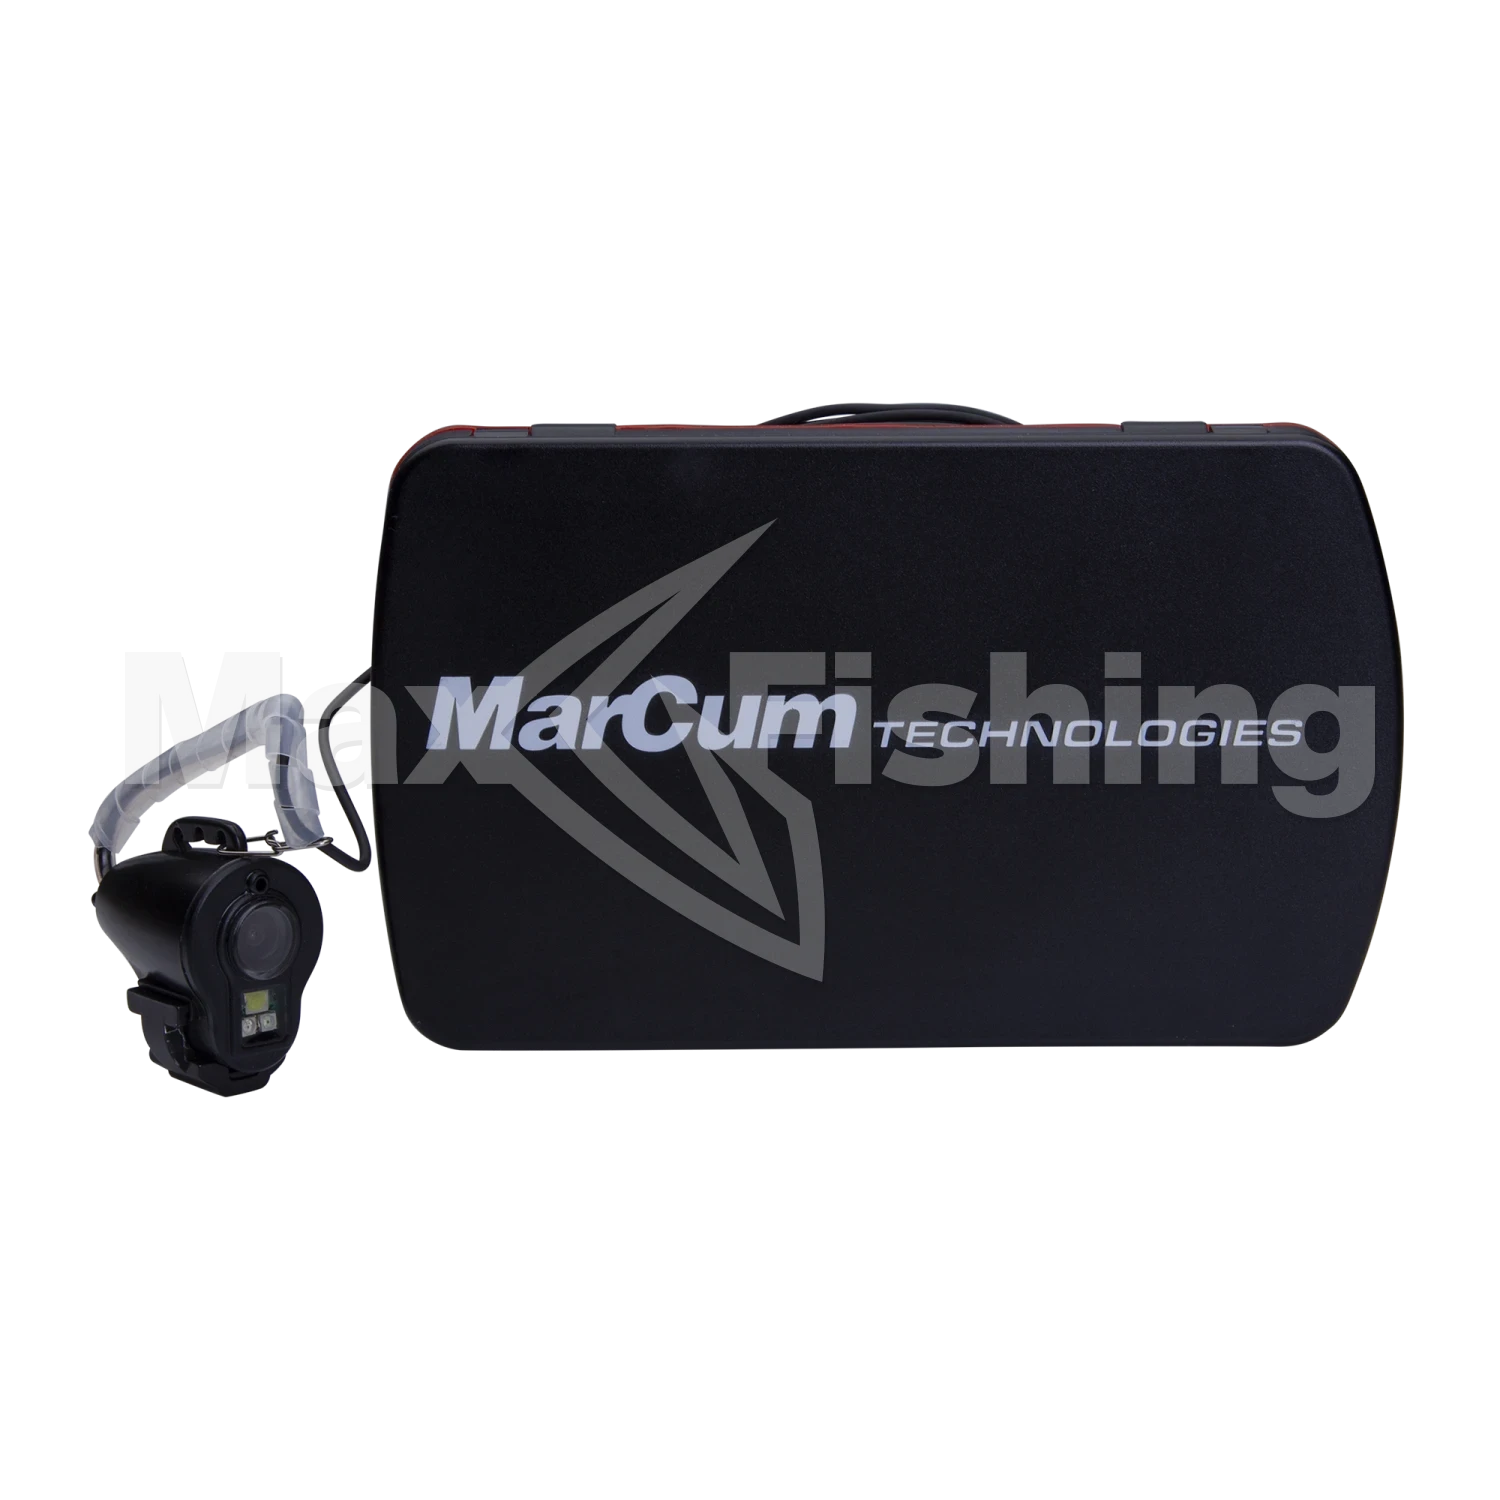 Подводная камера MarCum Recon 5 Plus